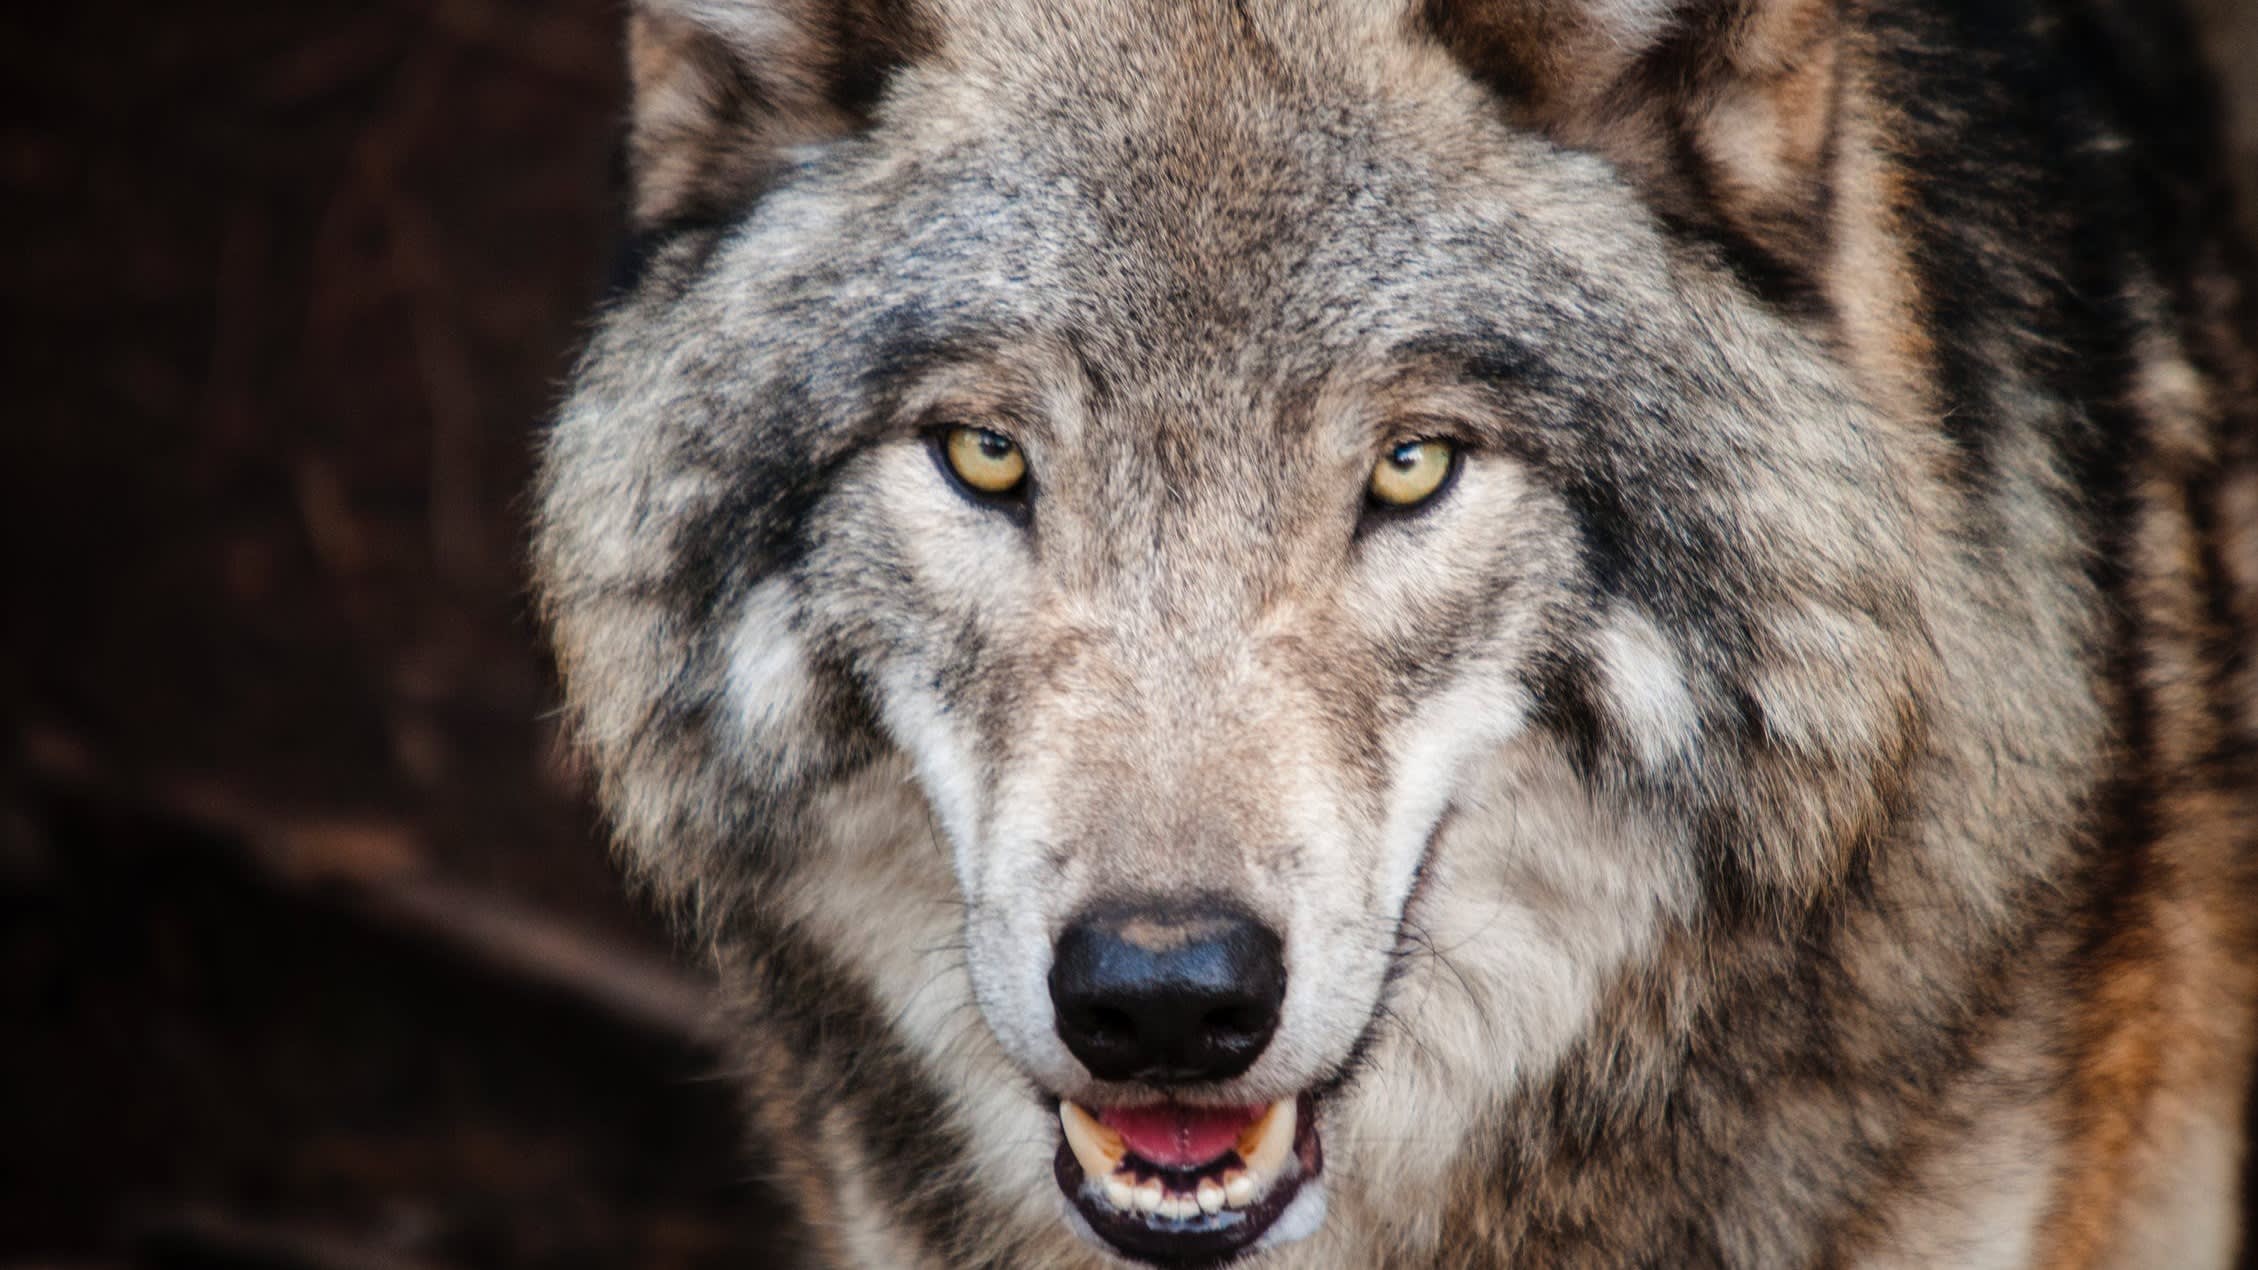 Schapenhouder in arm gebeten door wolf, politie schiet dier dood